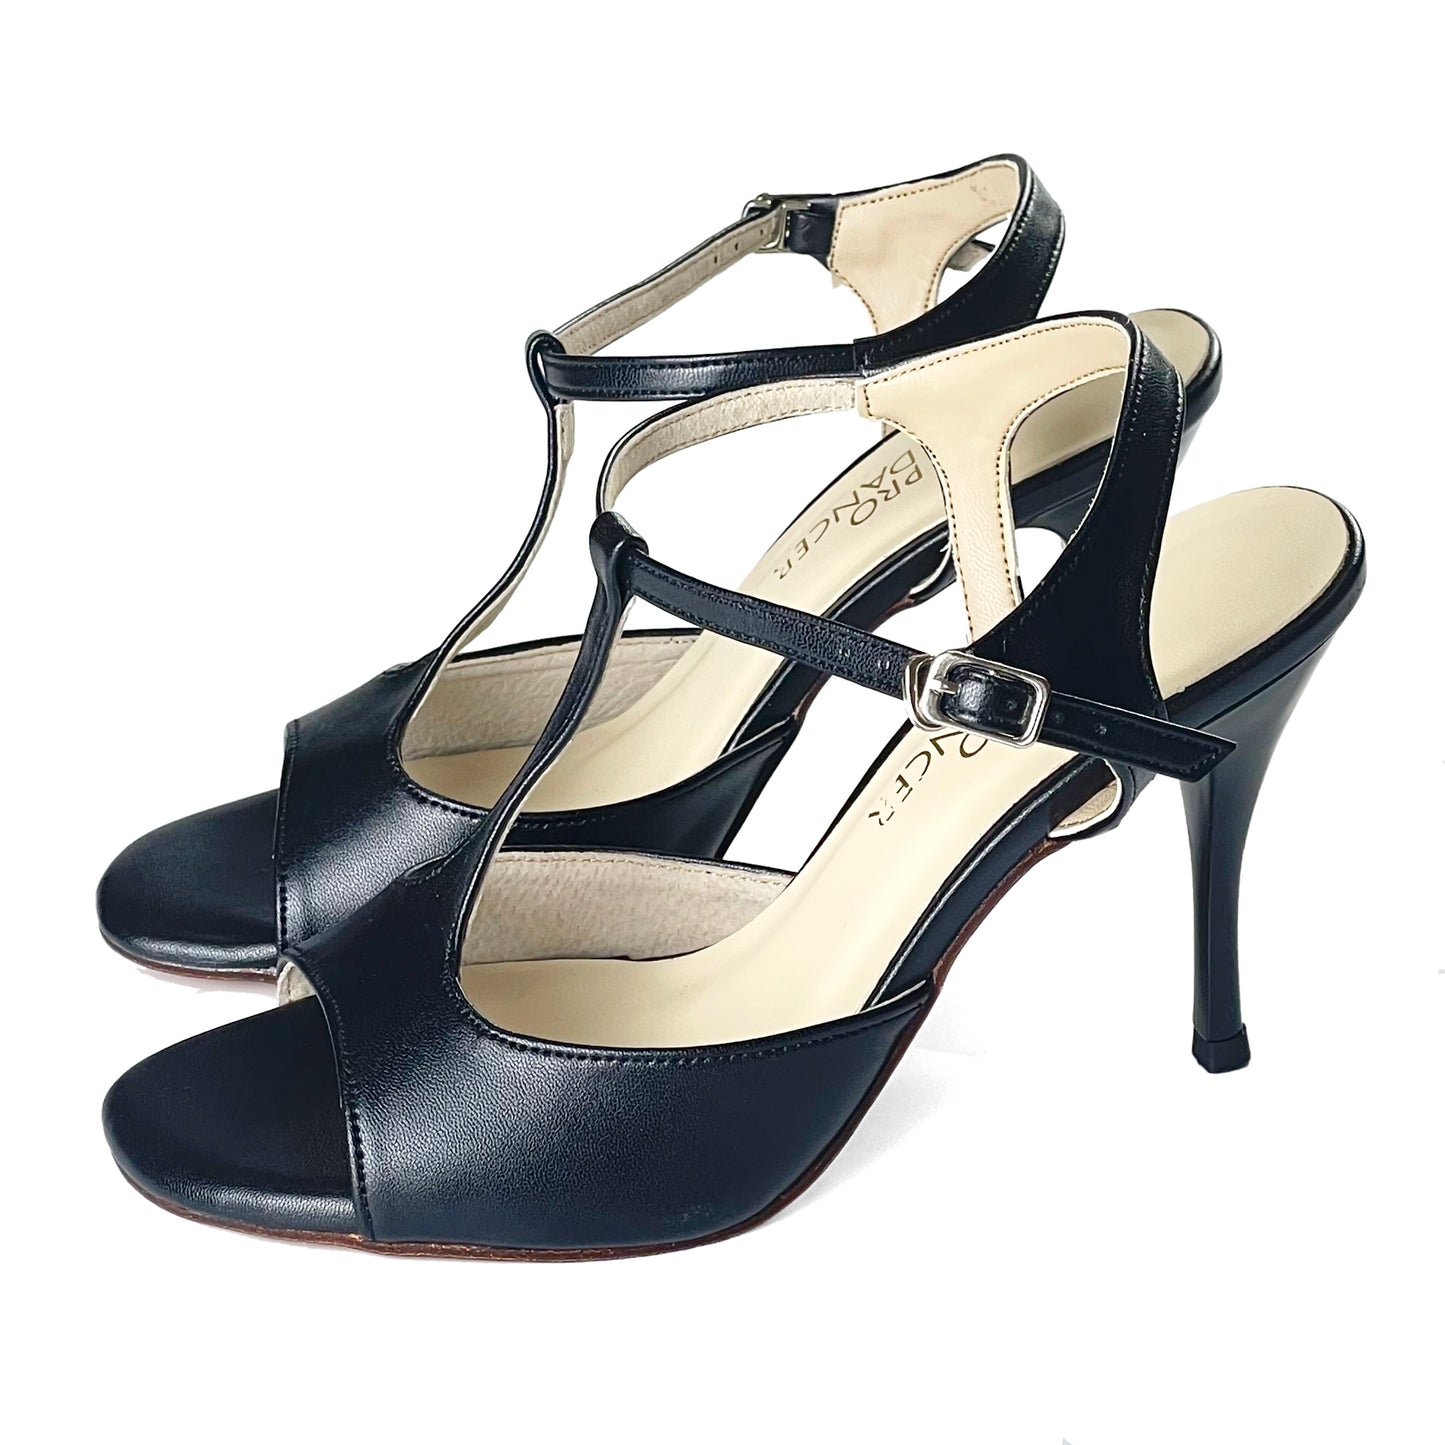 Pro Dancer Women's Tango Shoes Argentina High Heel Dance Sandals Leather Sole Black (PD-9012D)